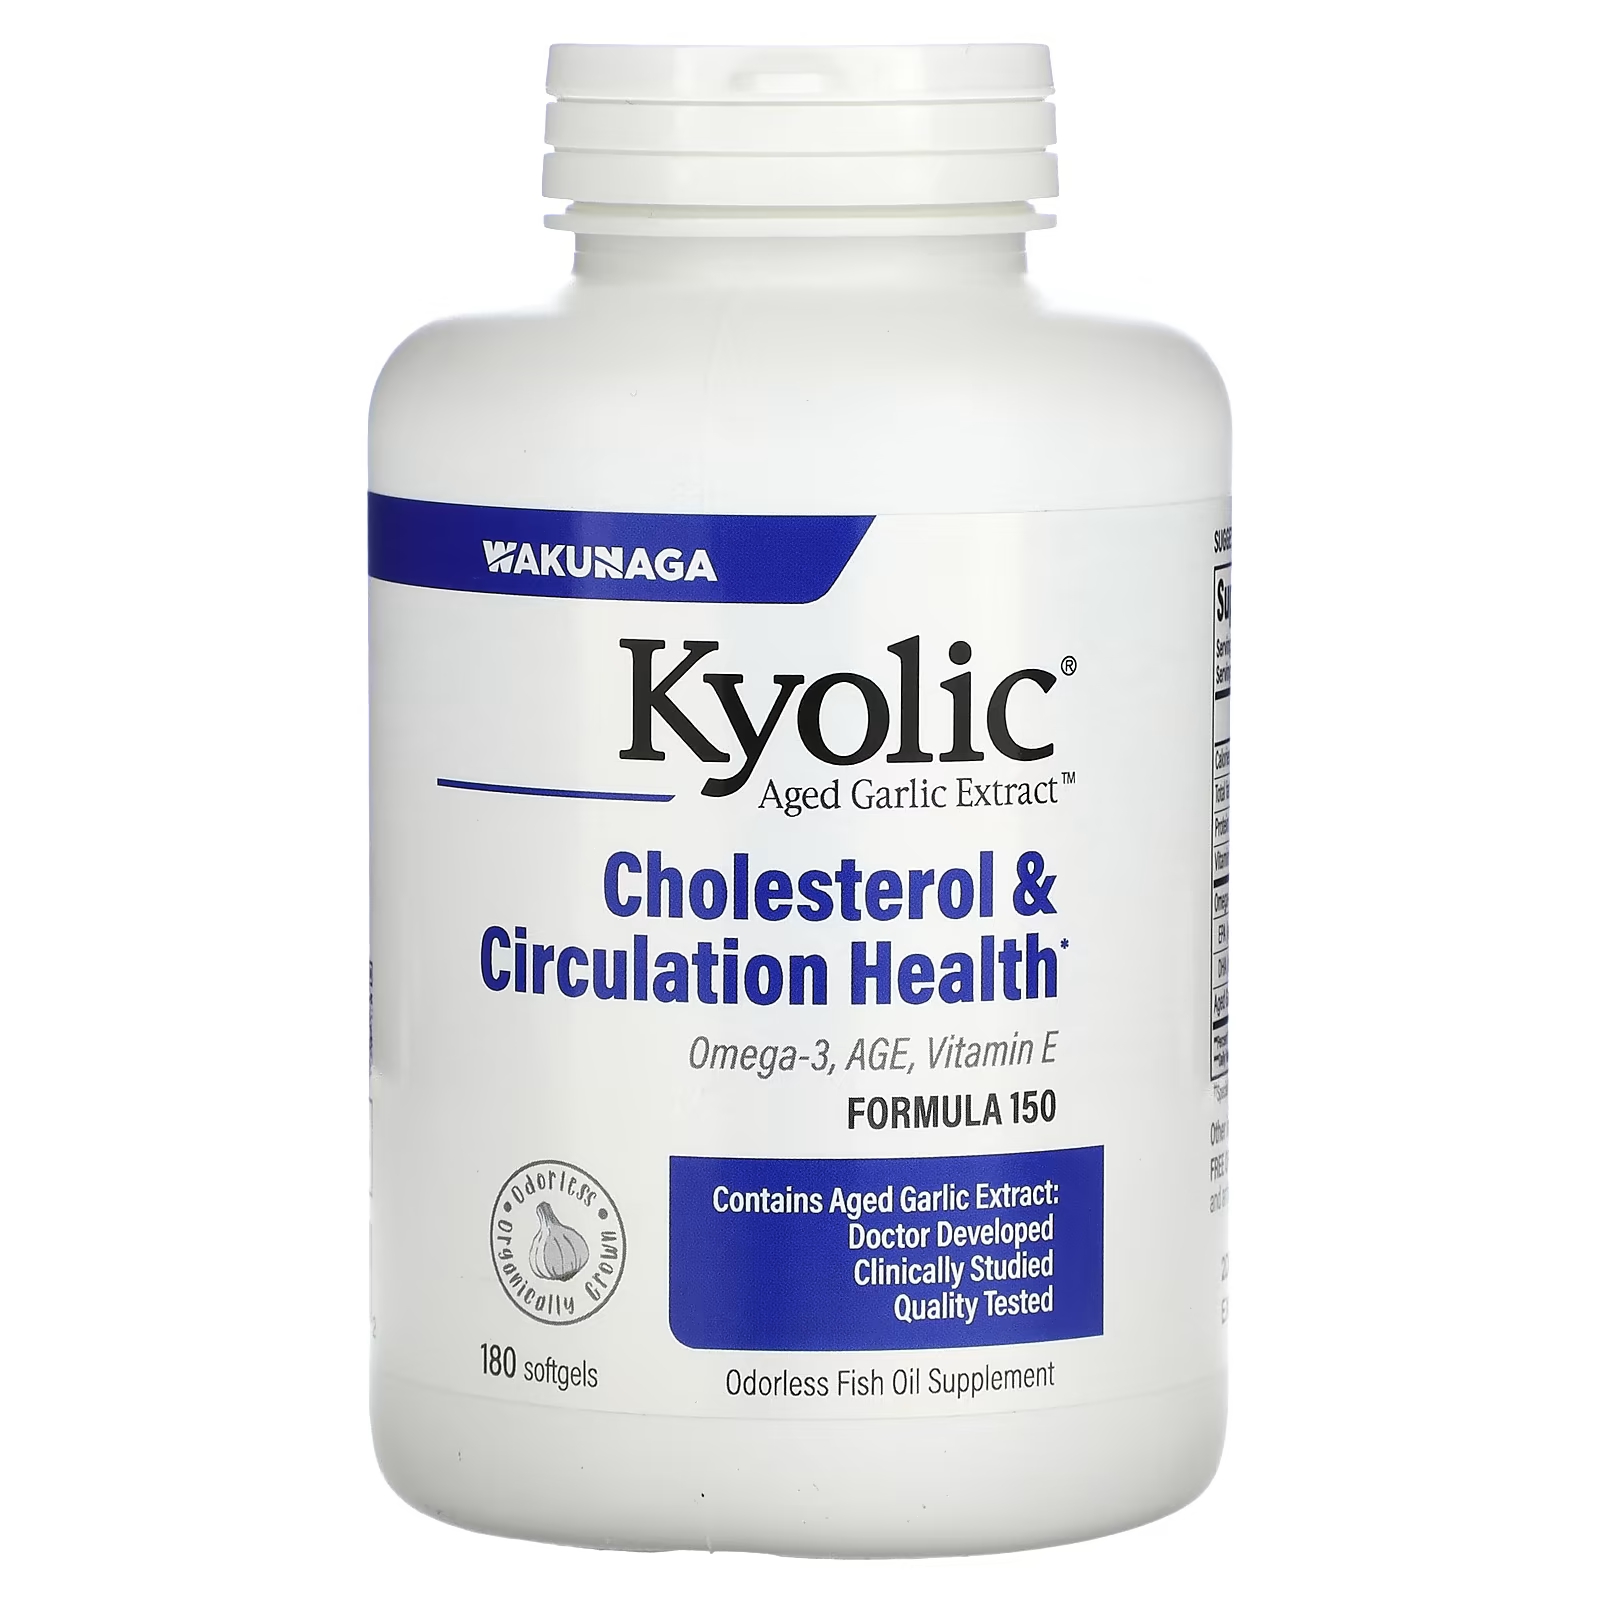 Экстракт выдержанного чеснока Kyolic холестерин и здоровье кровообращения, 180 мягких таблеток kyolic aged garlic extract выдержанный экстракт чеснока с омега 3 улучшение холестеринового баланса и кровообращения 90 капсул с омега 3